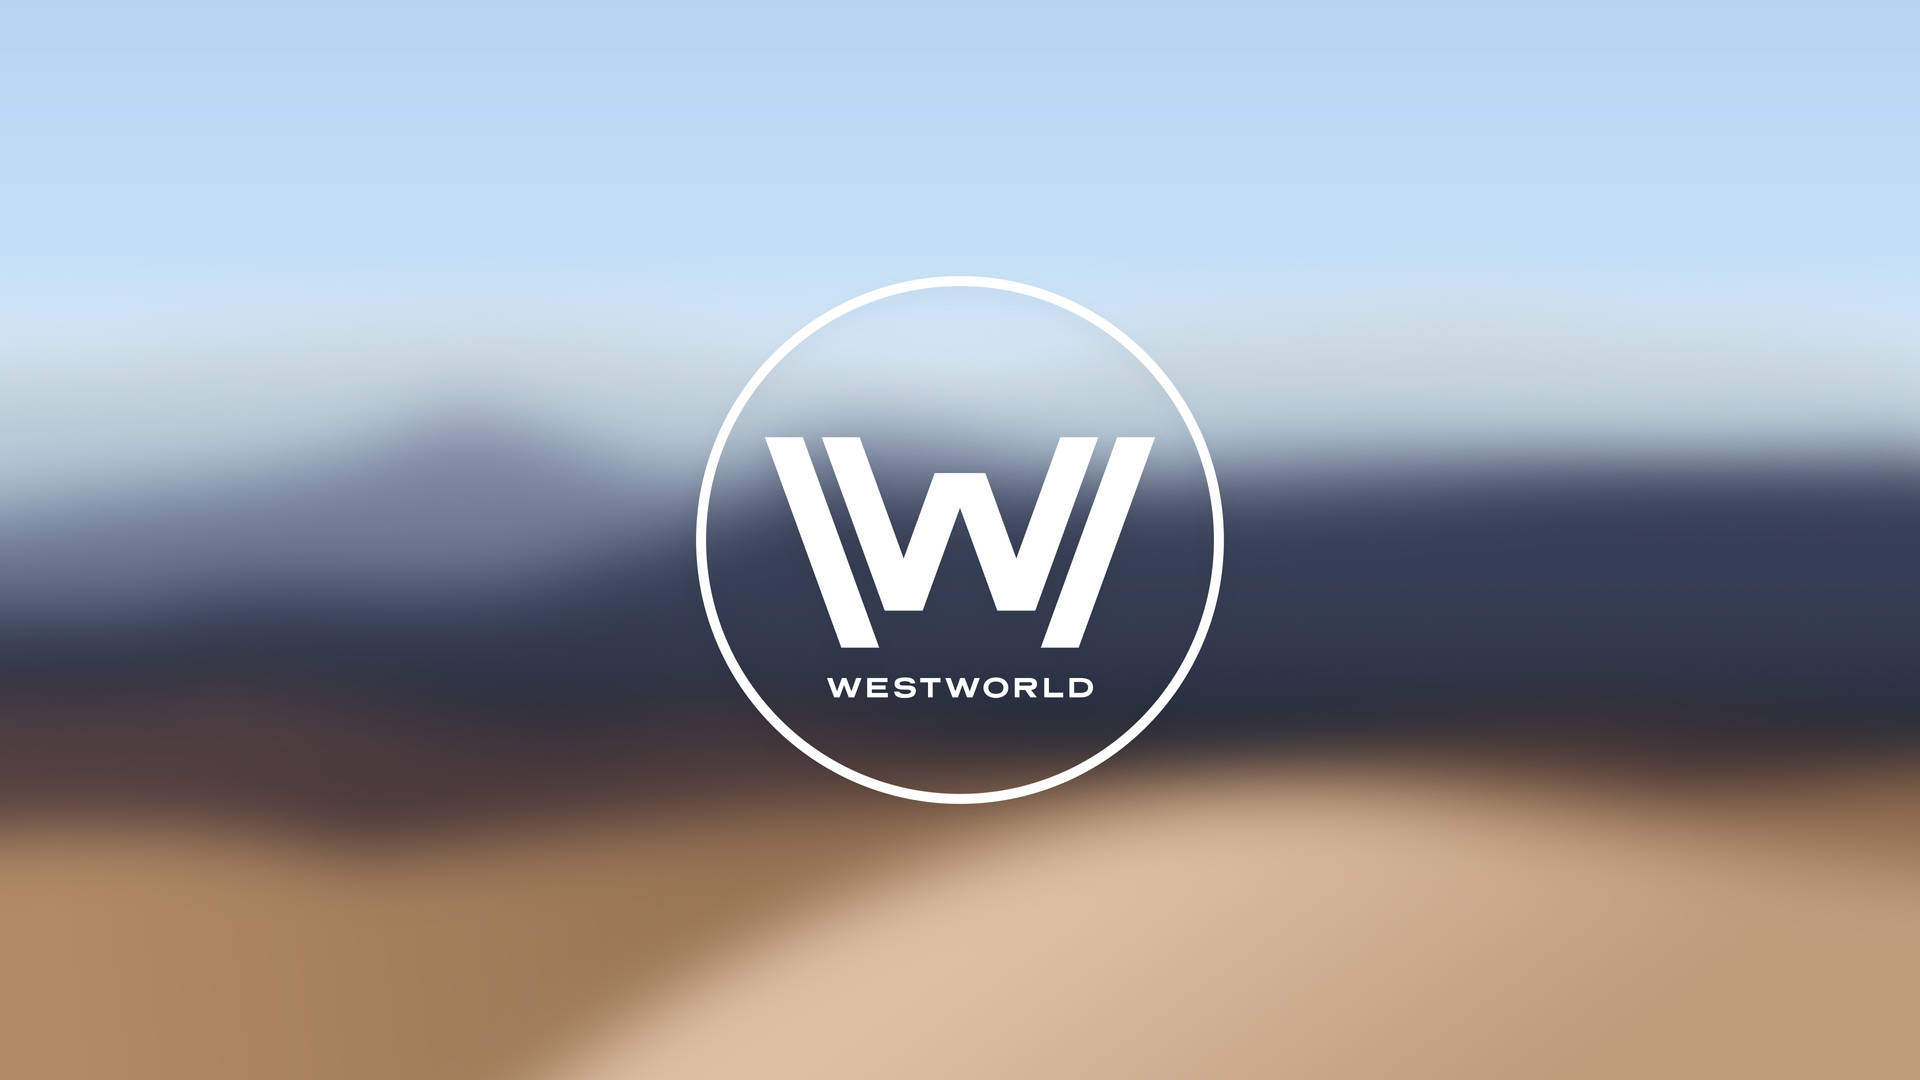 White Westworld Emblem